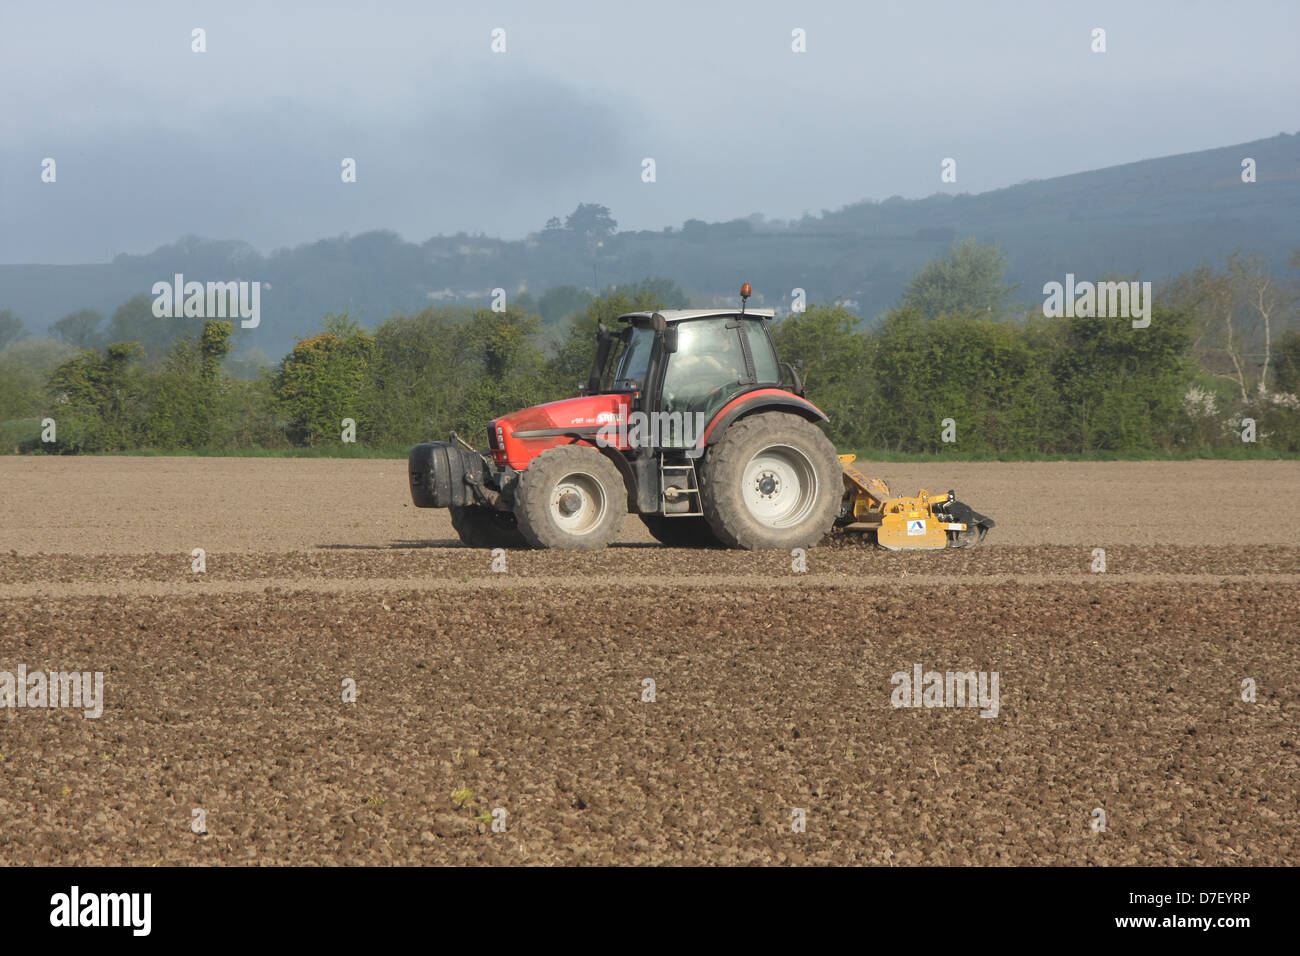 Agricoltore approfittando del bel tempo per lavorare il suo paese in una domenica, Maggio 2013 Foto Stock